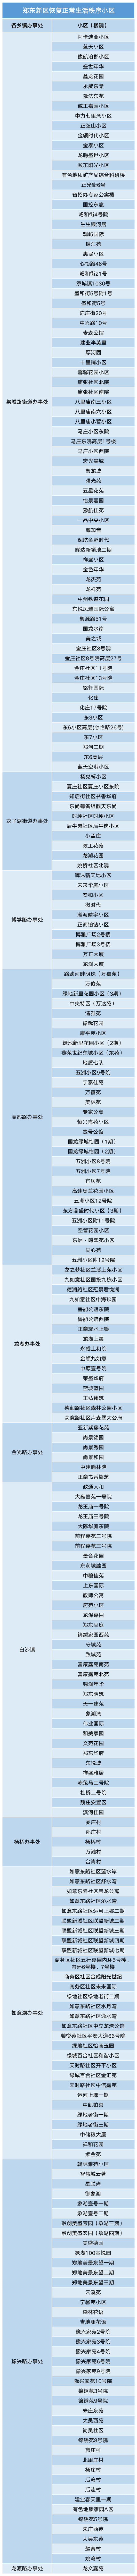 广西昨日新增本土确诊37例 - Sports - 博牛门户 百度热点快讯